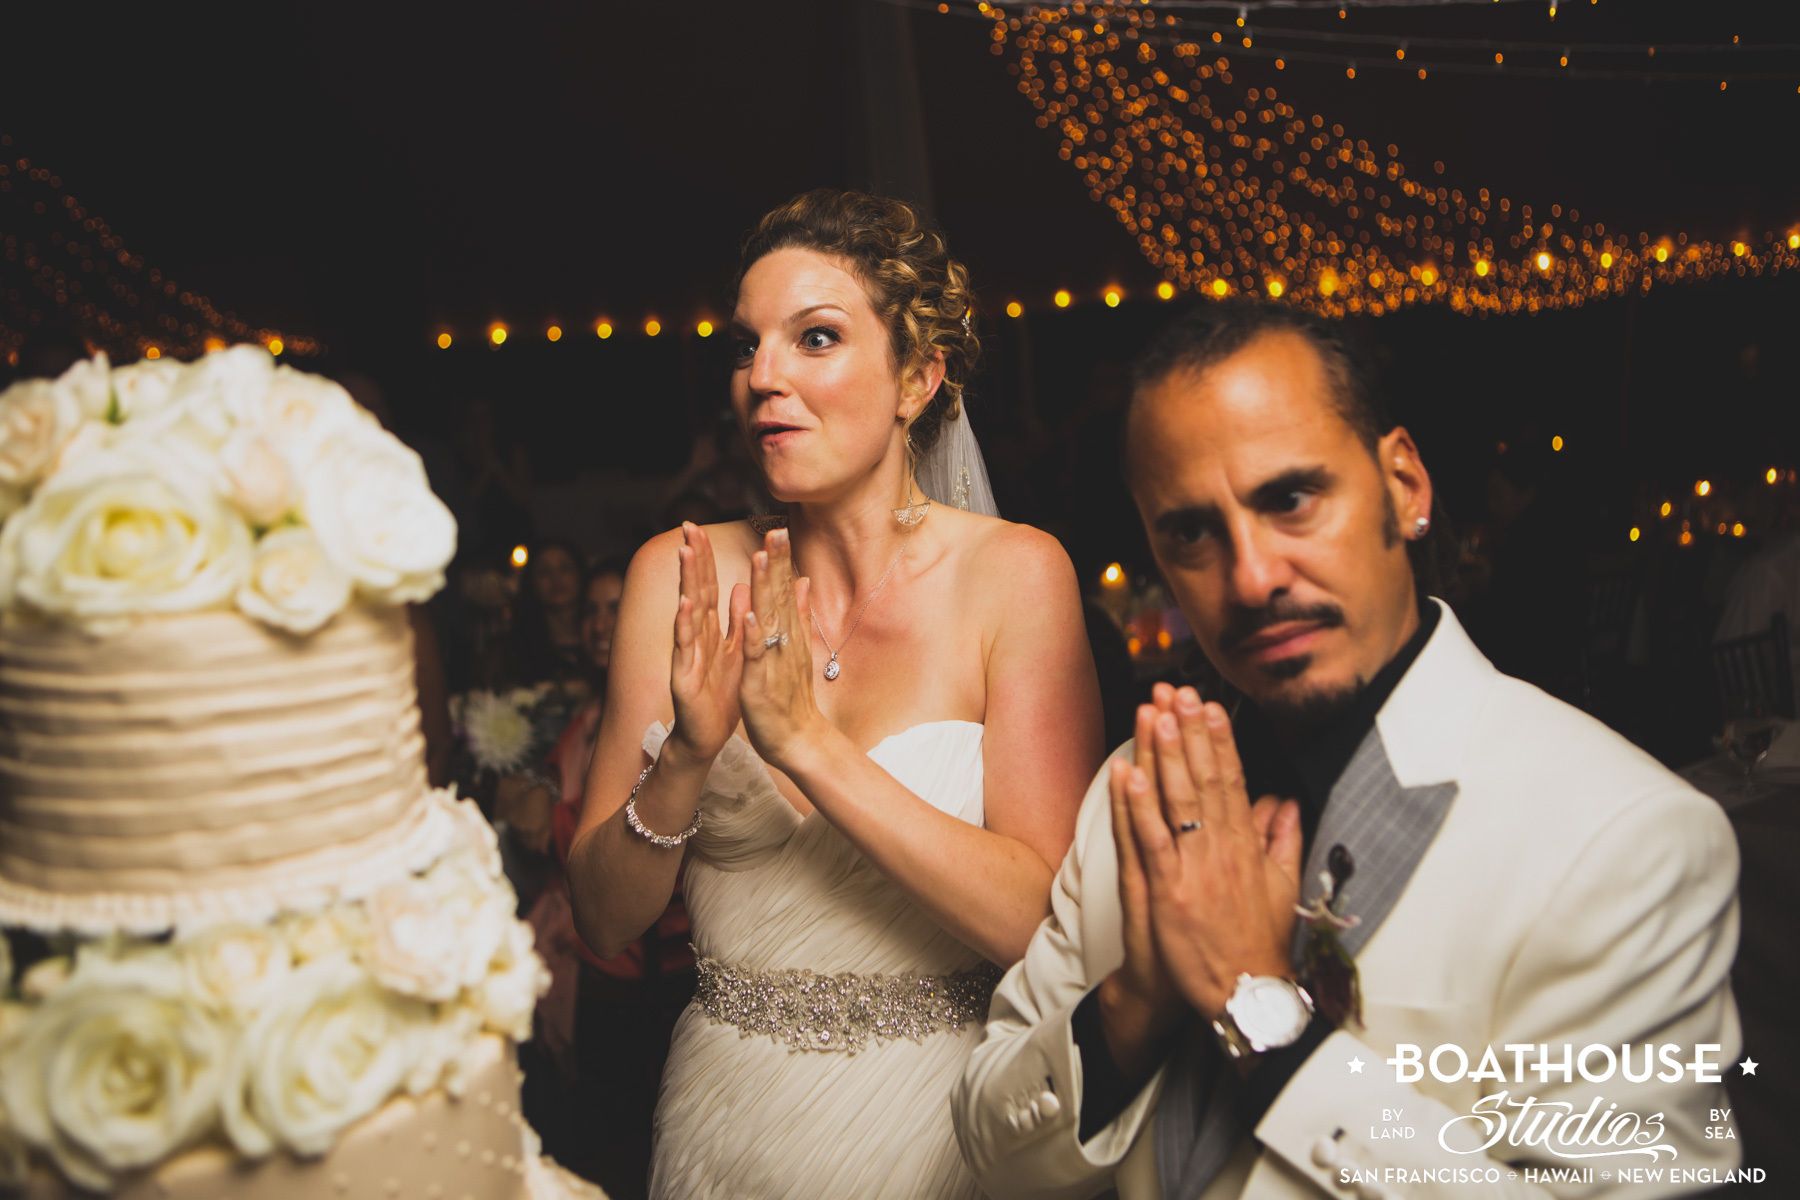 A Morroco & Puerto Rico Inspired Wedding